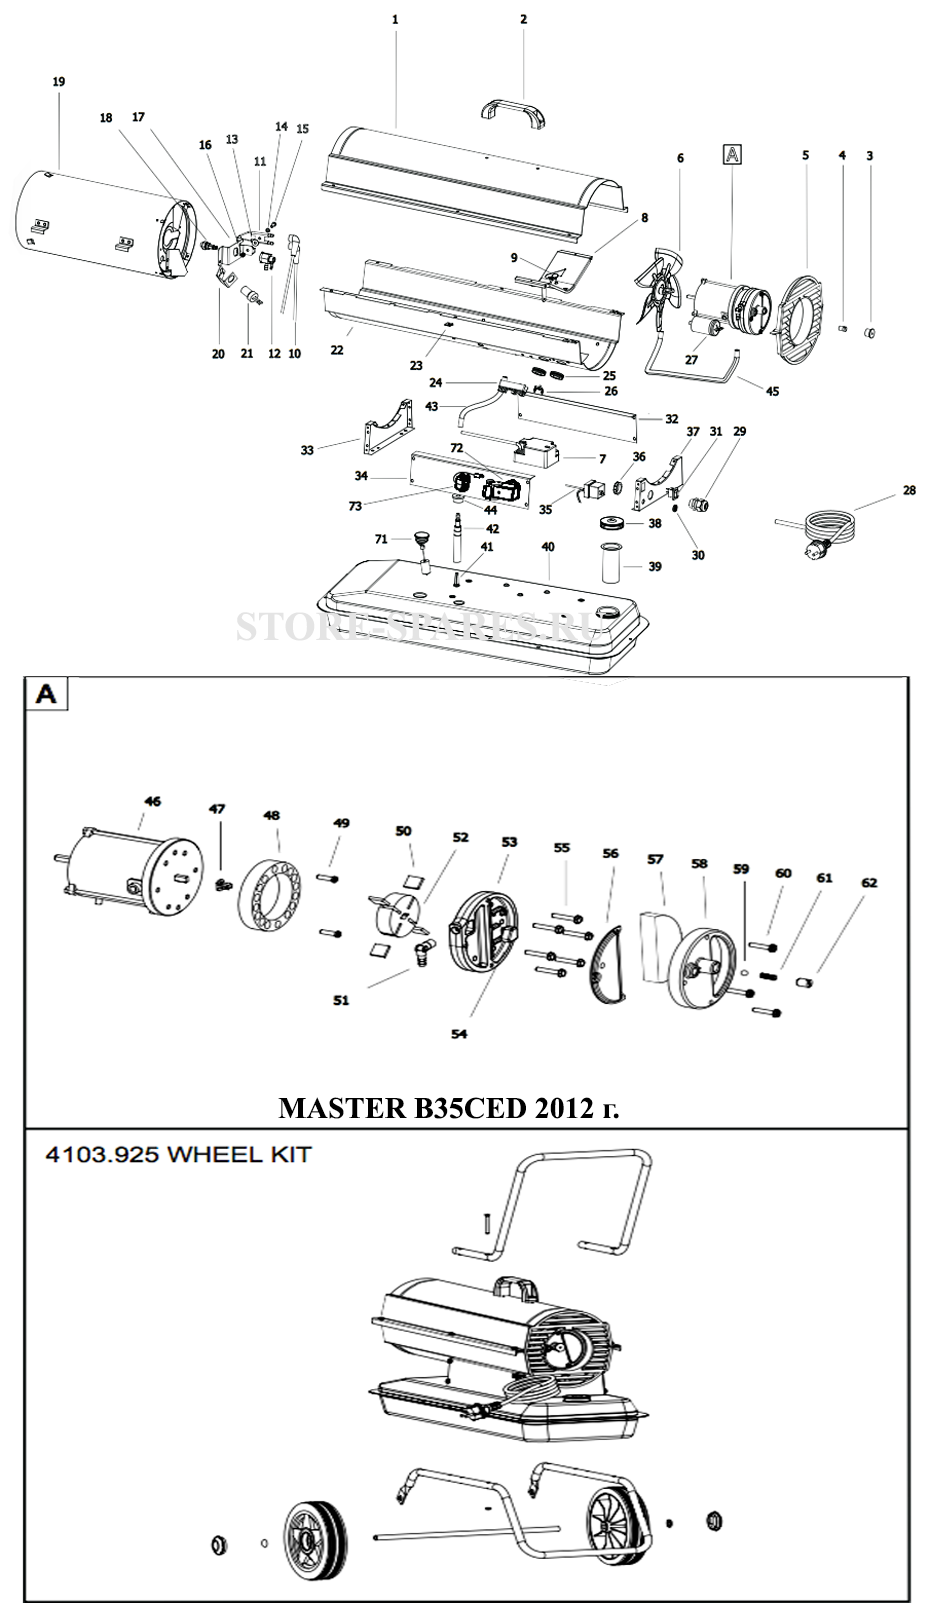 Нажмите чтобы посмотреть схему тепловой пушки MASTER B35CED 2012 г.в.